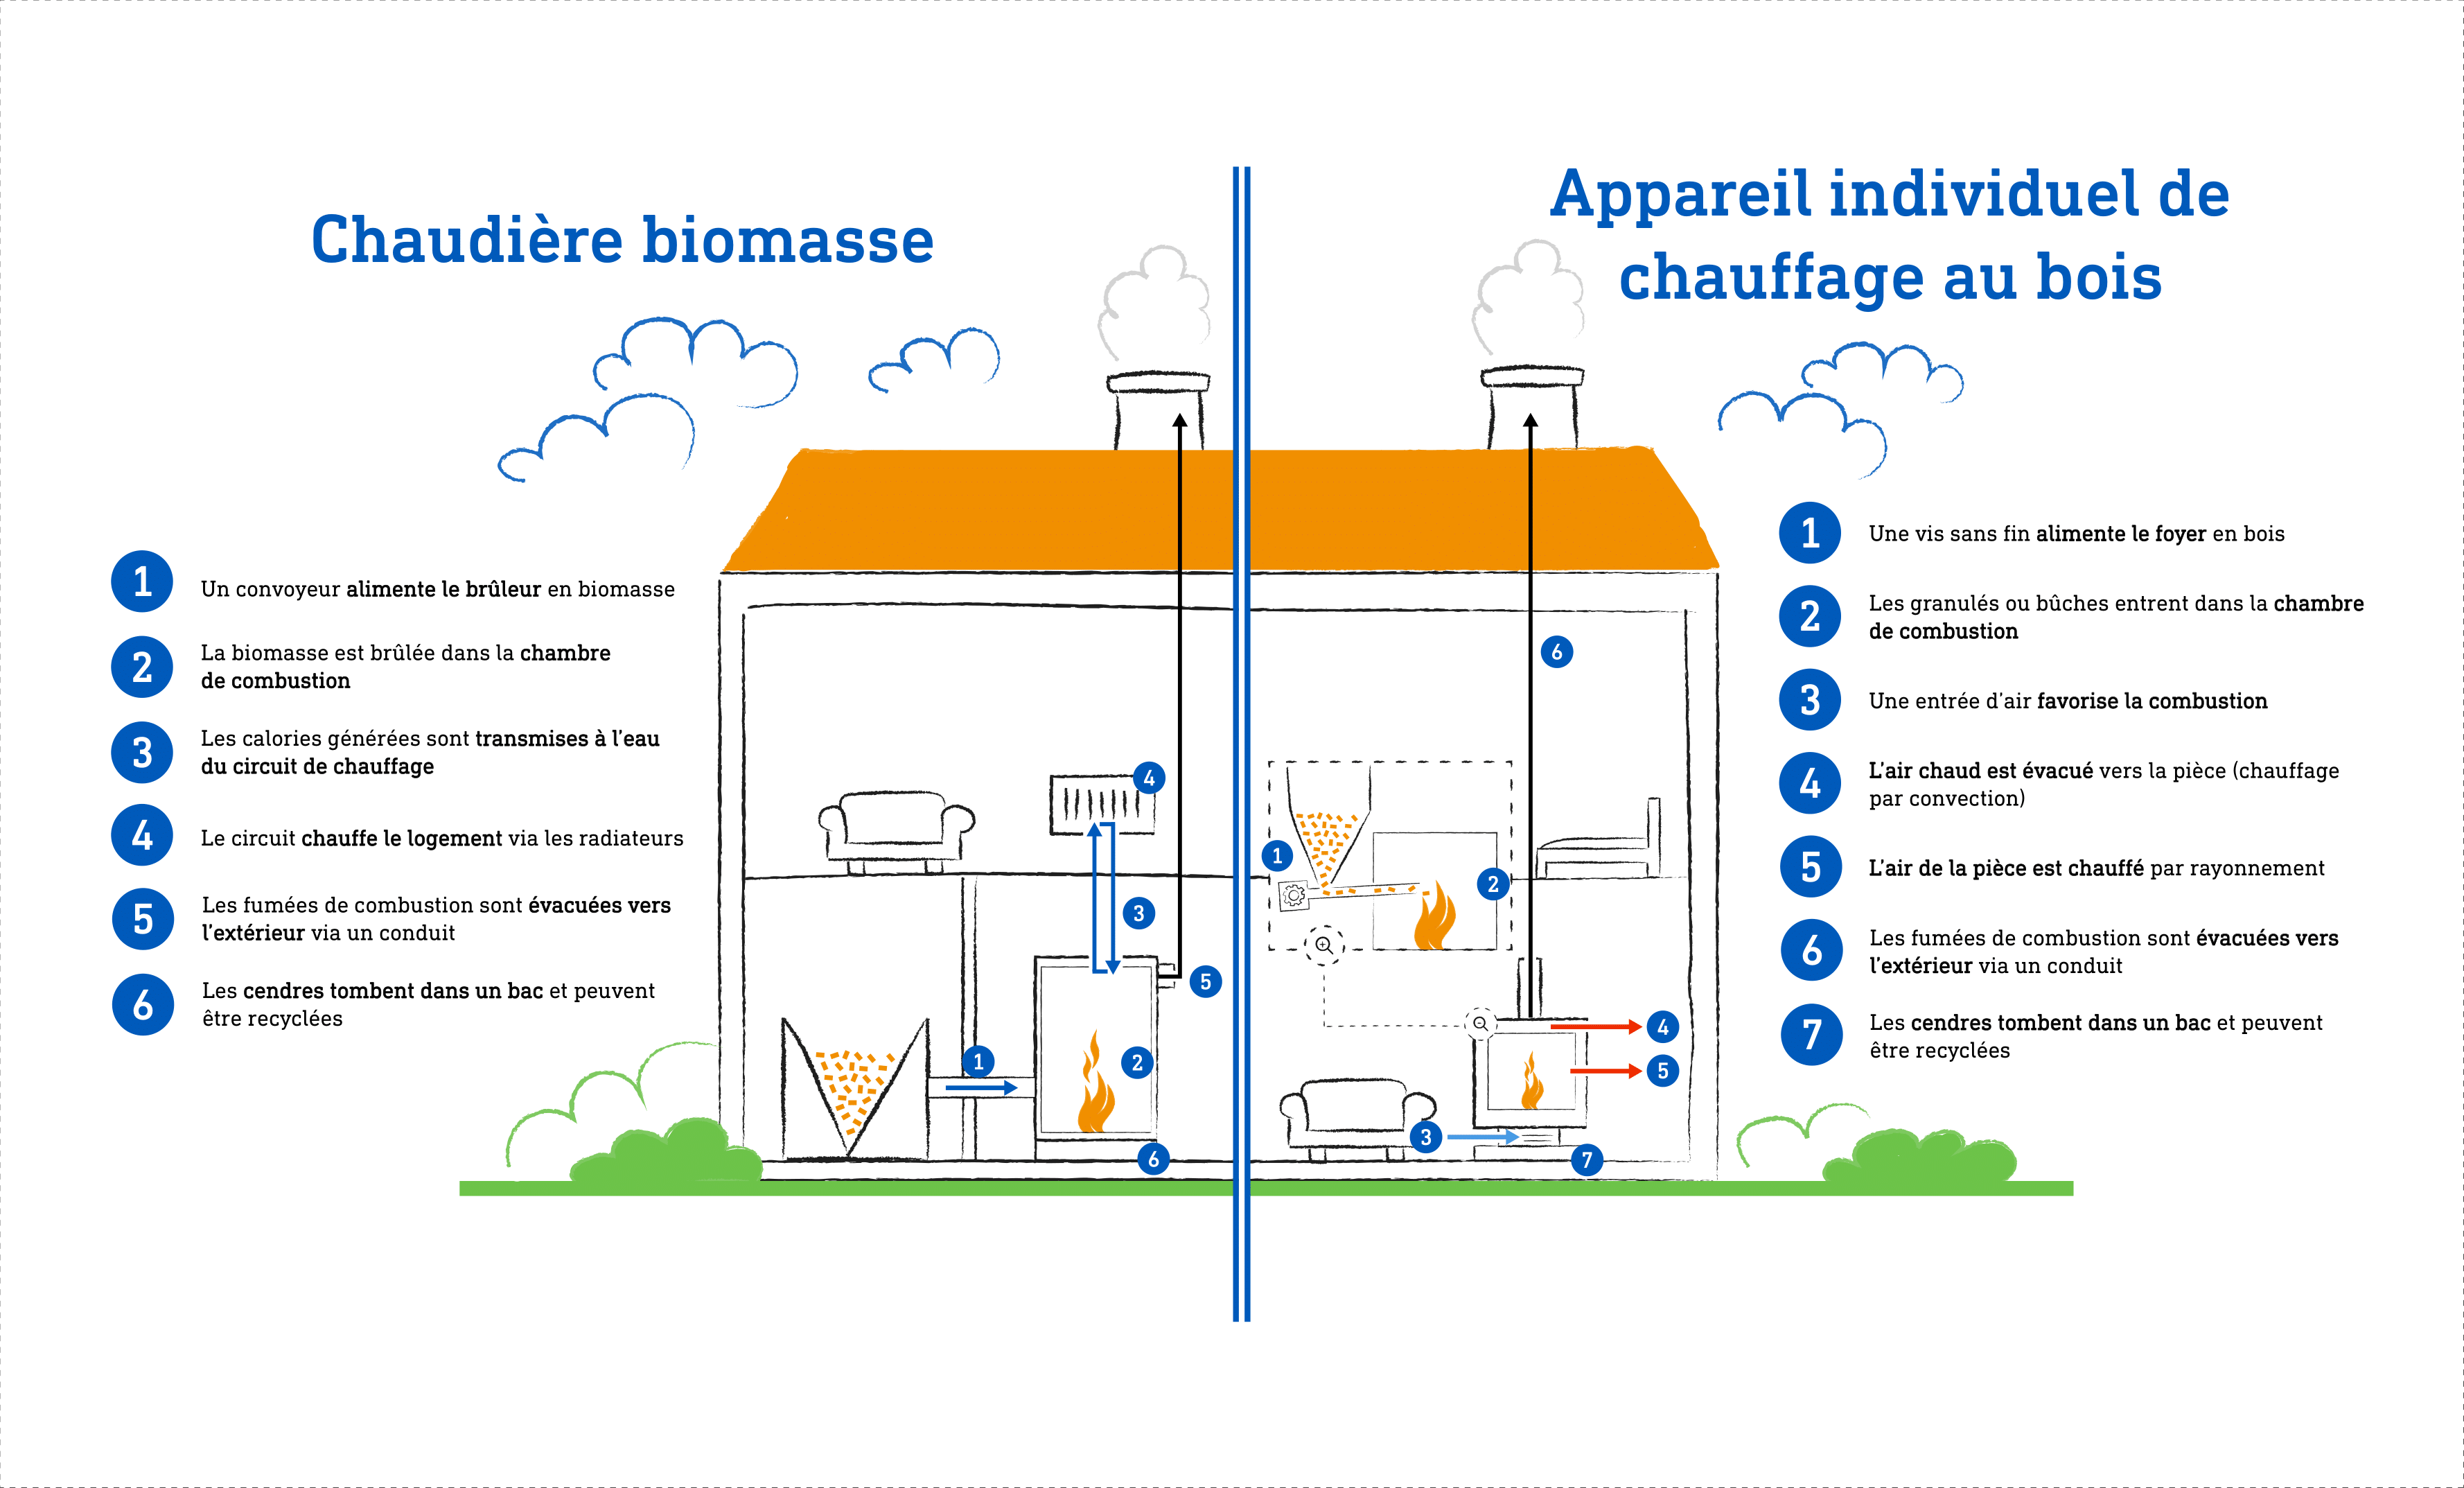 Chaudière biomasse vs AICB : quelles différences ?